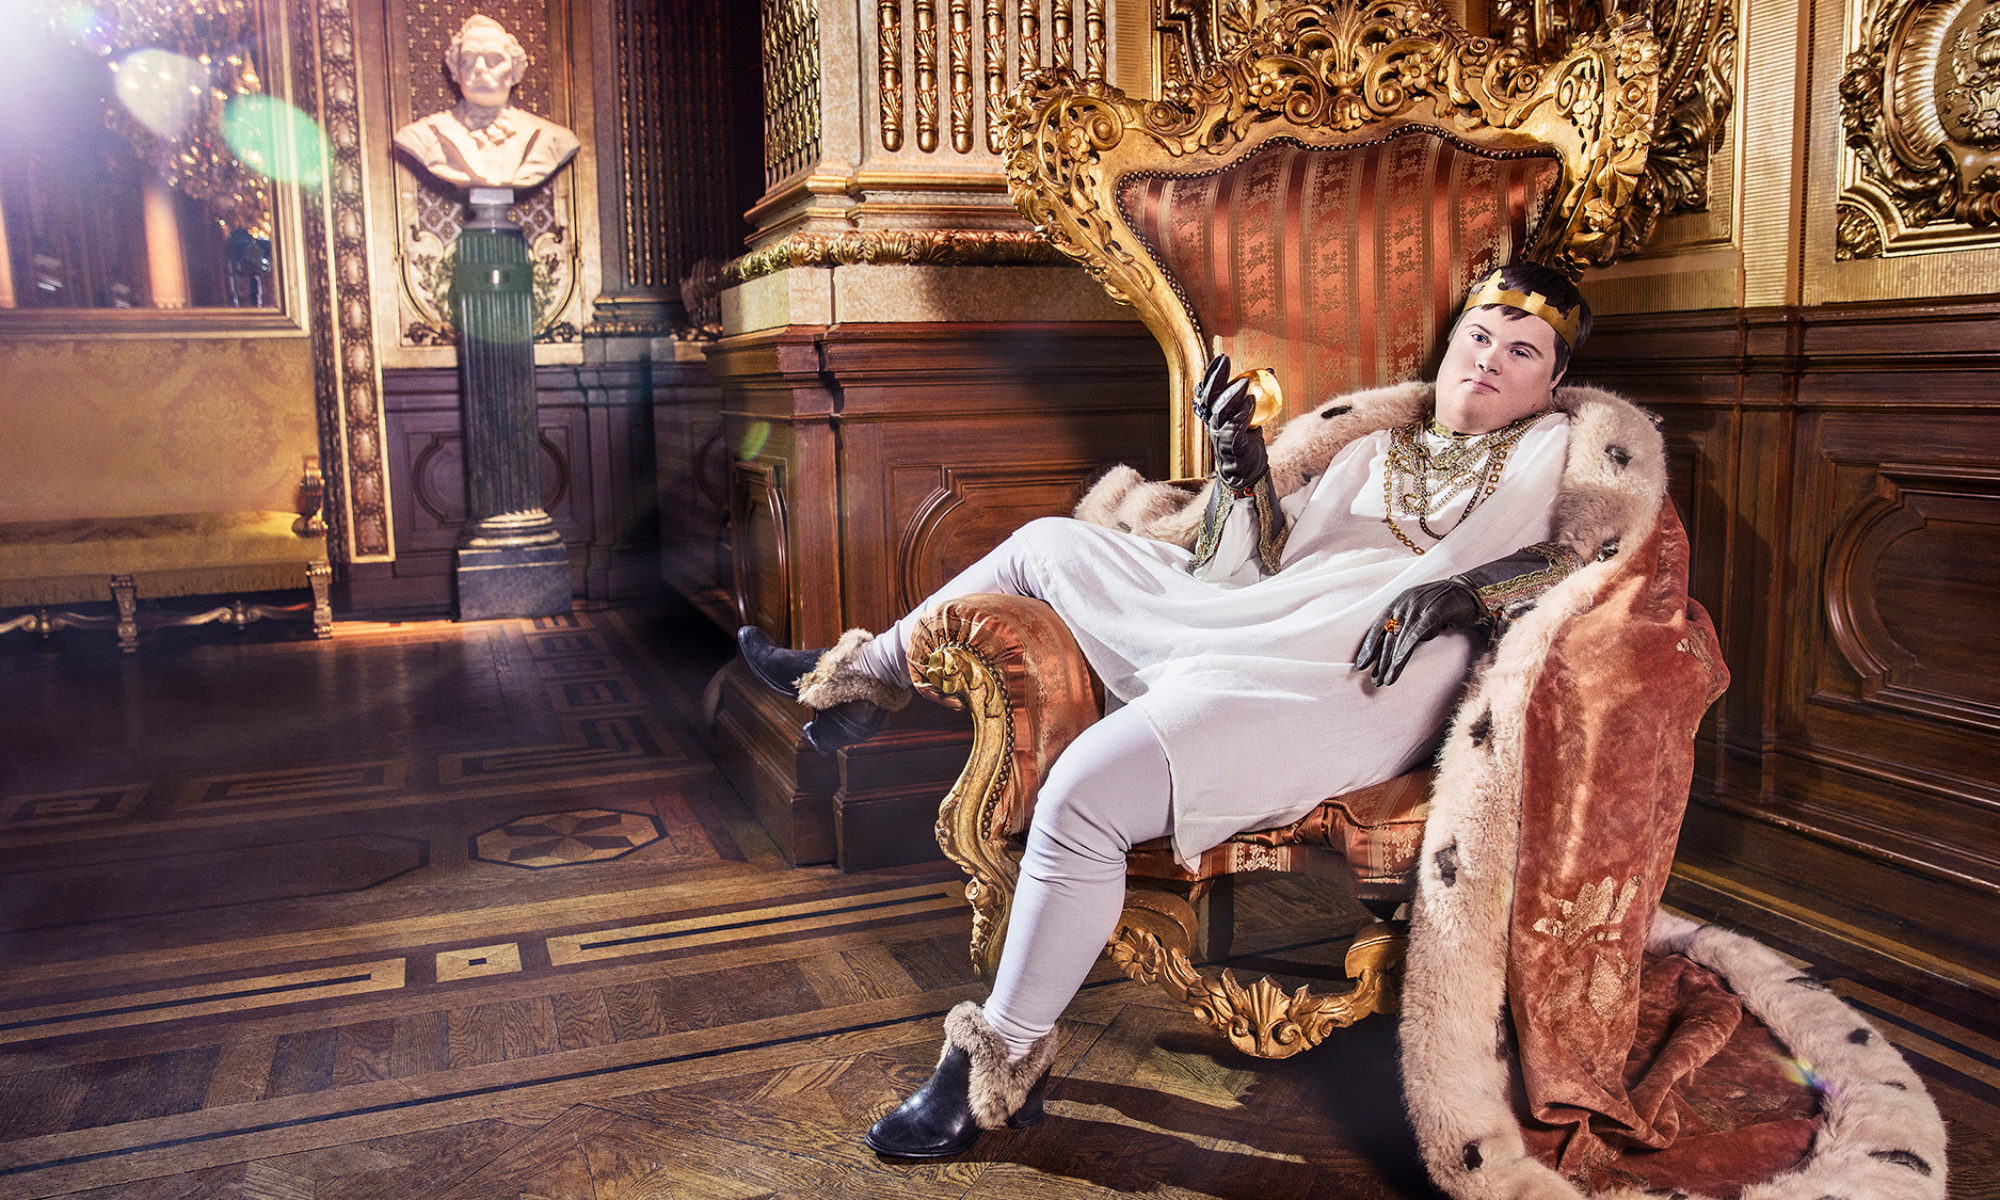 En person föreställande en klassisk kung sitter avslappnat i en tron med ena benet på armstödet. Bakgrunden innehåller detaljer av guld, rött och sammet.